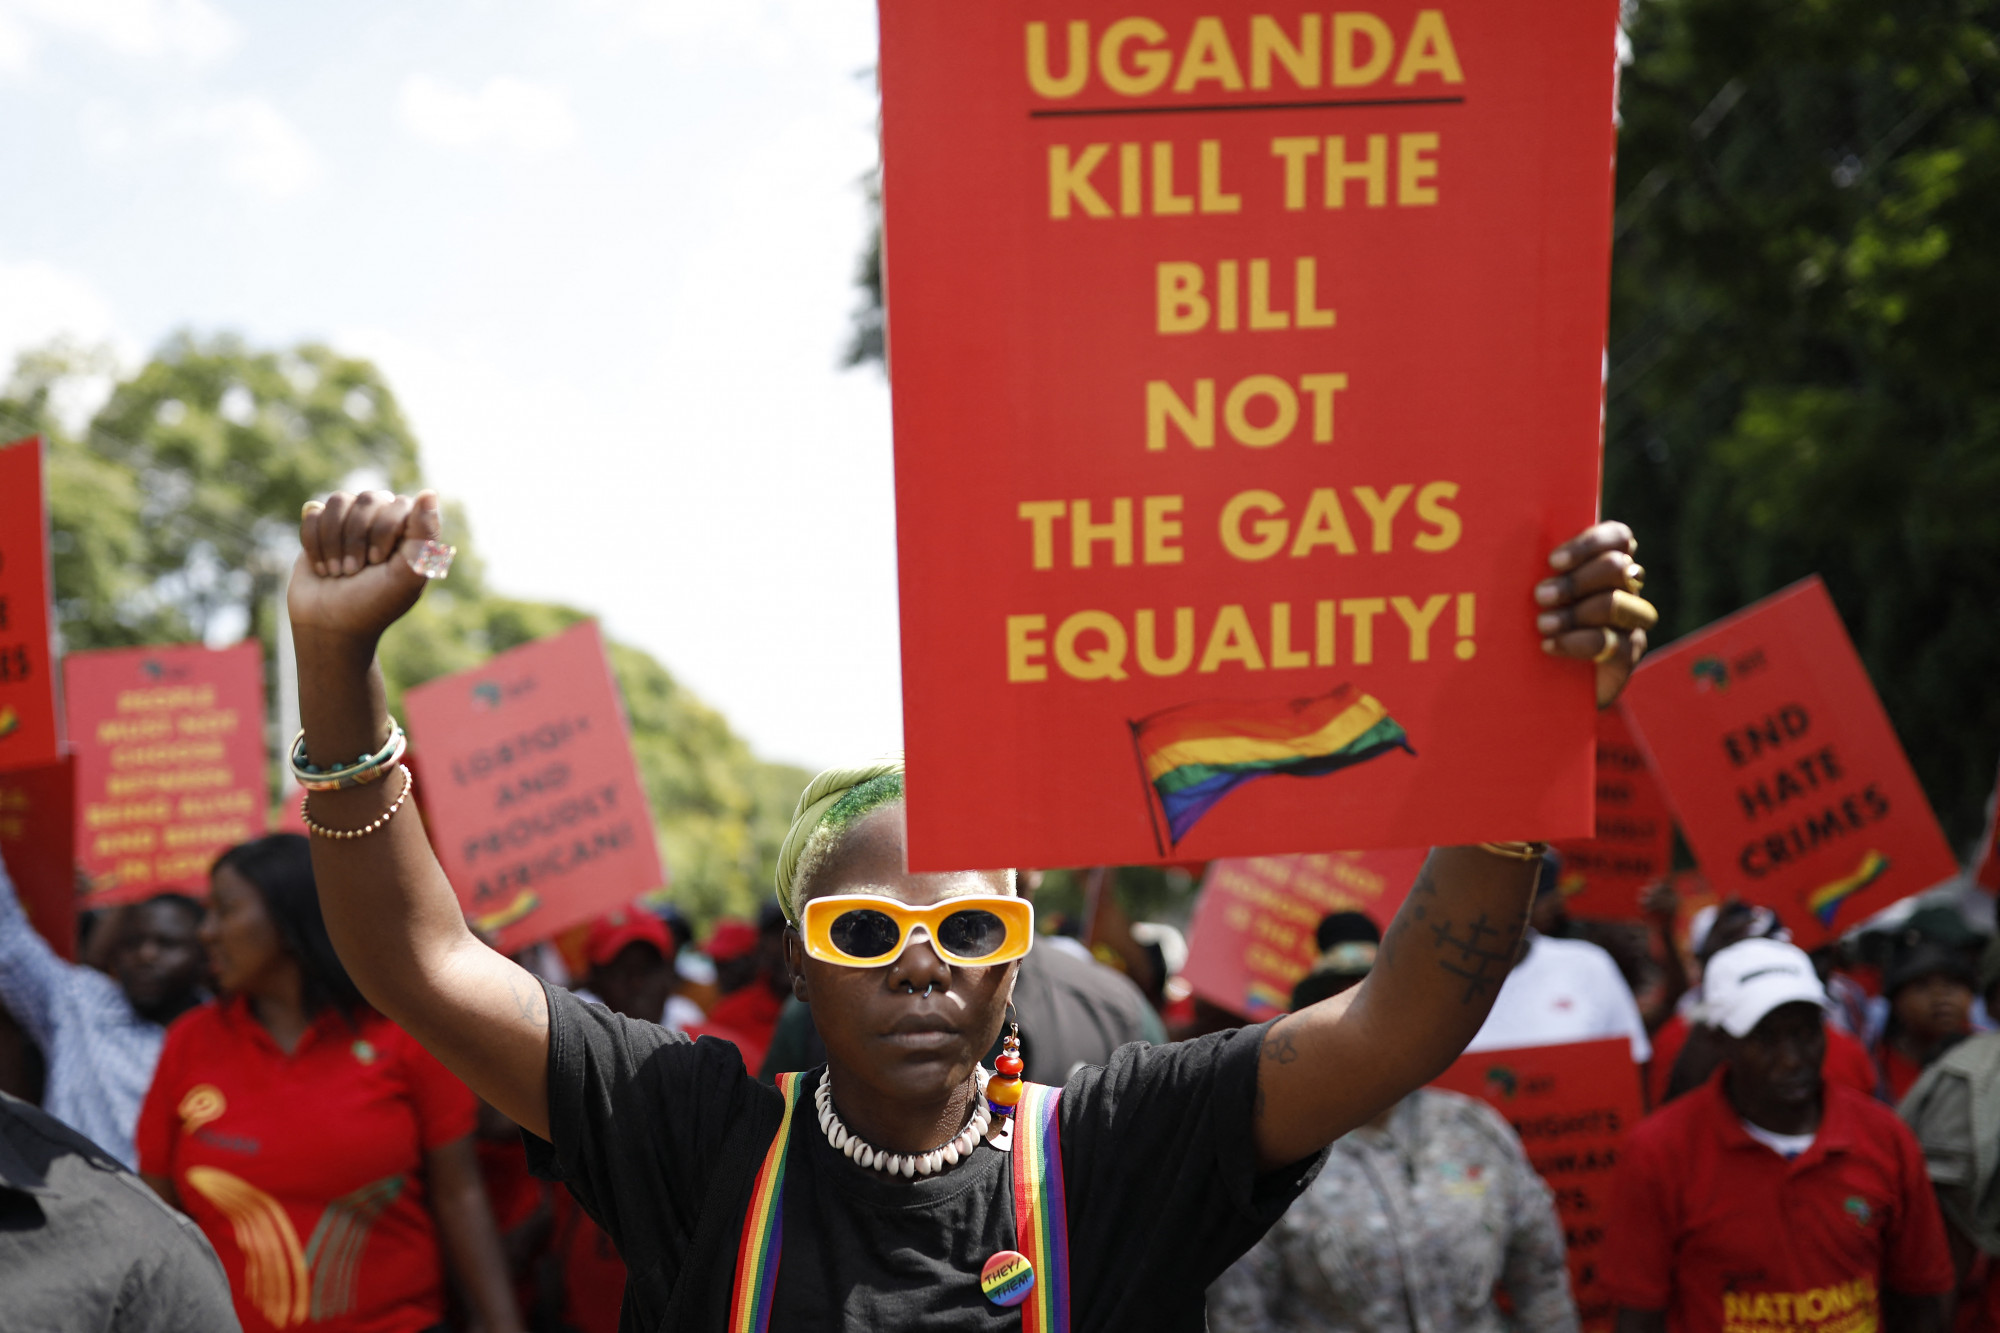 Benne maradt a halálbüntetés az ugandai melegtörvényben